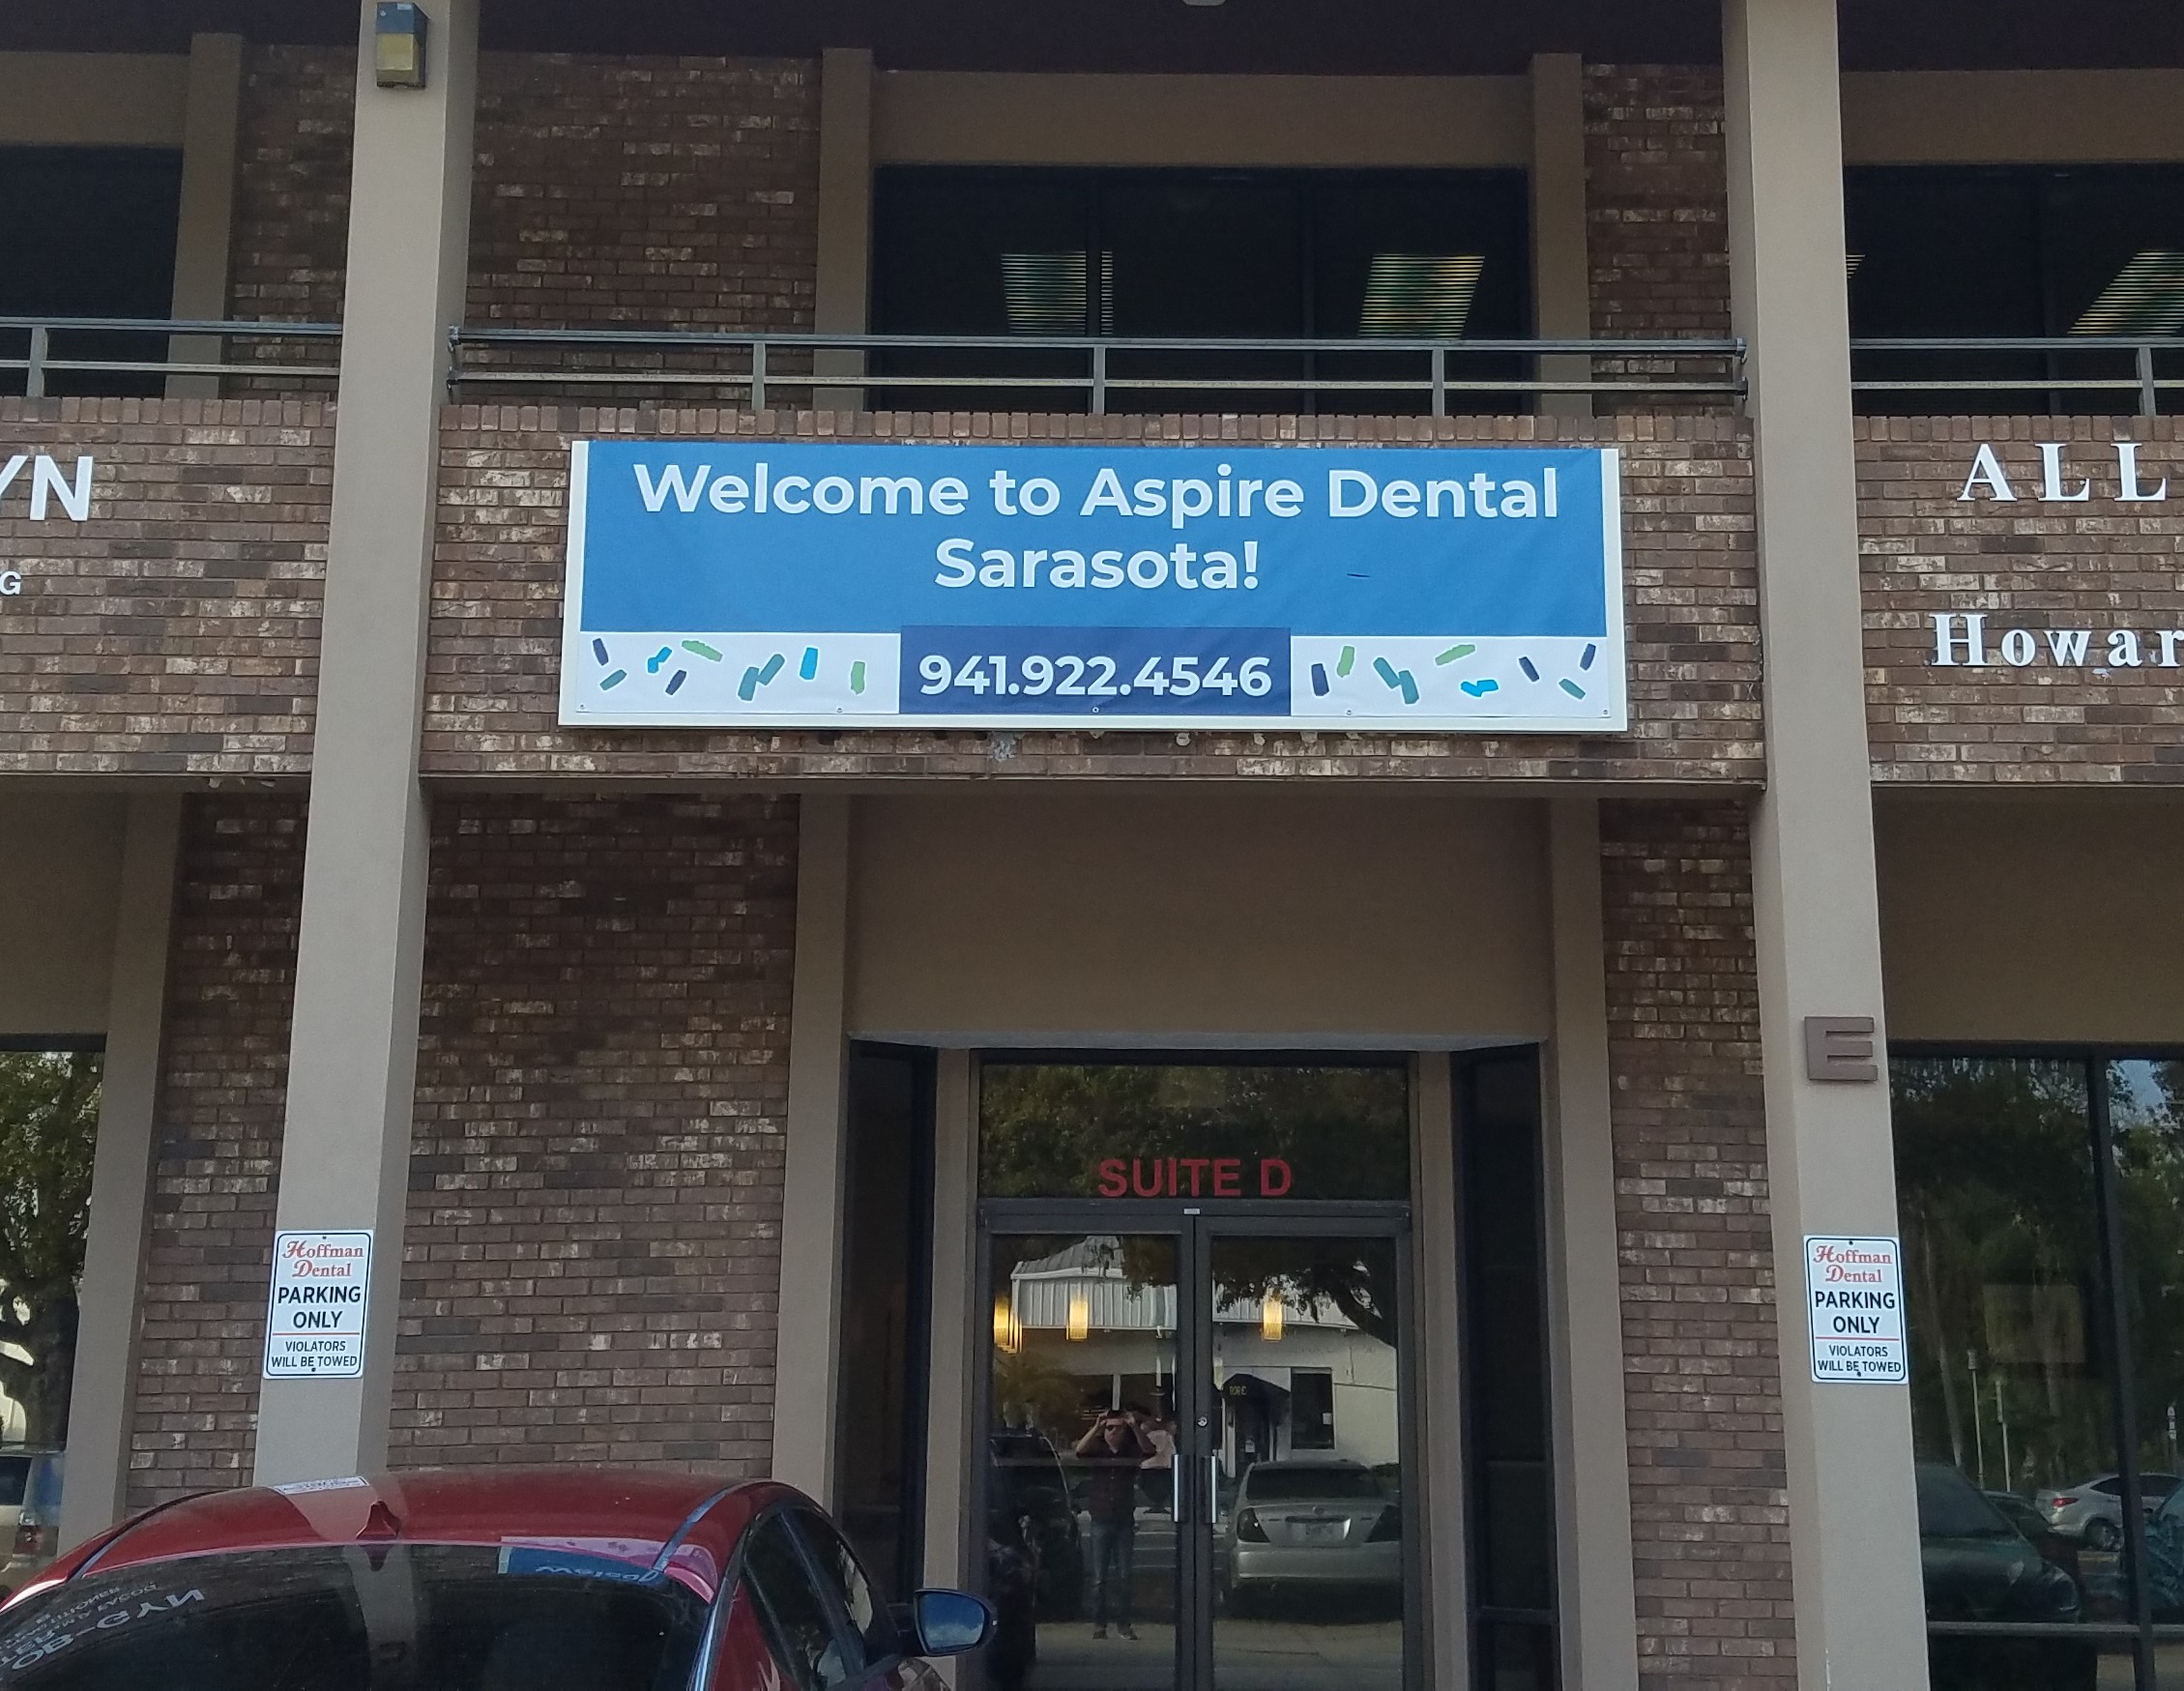 Aspire Dental Sarasota